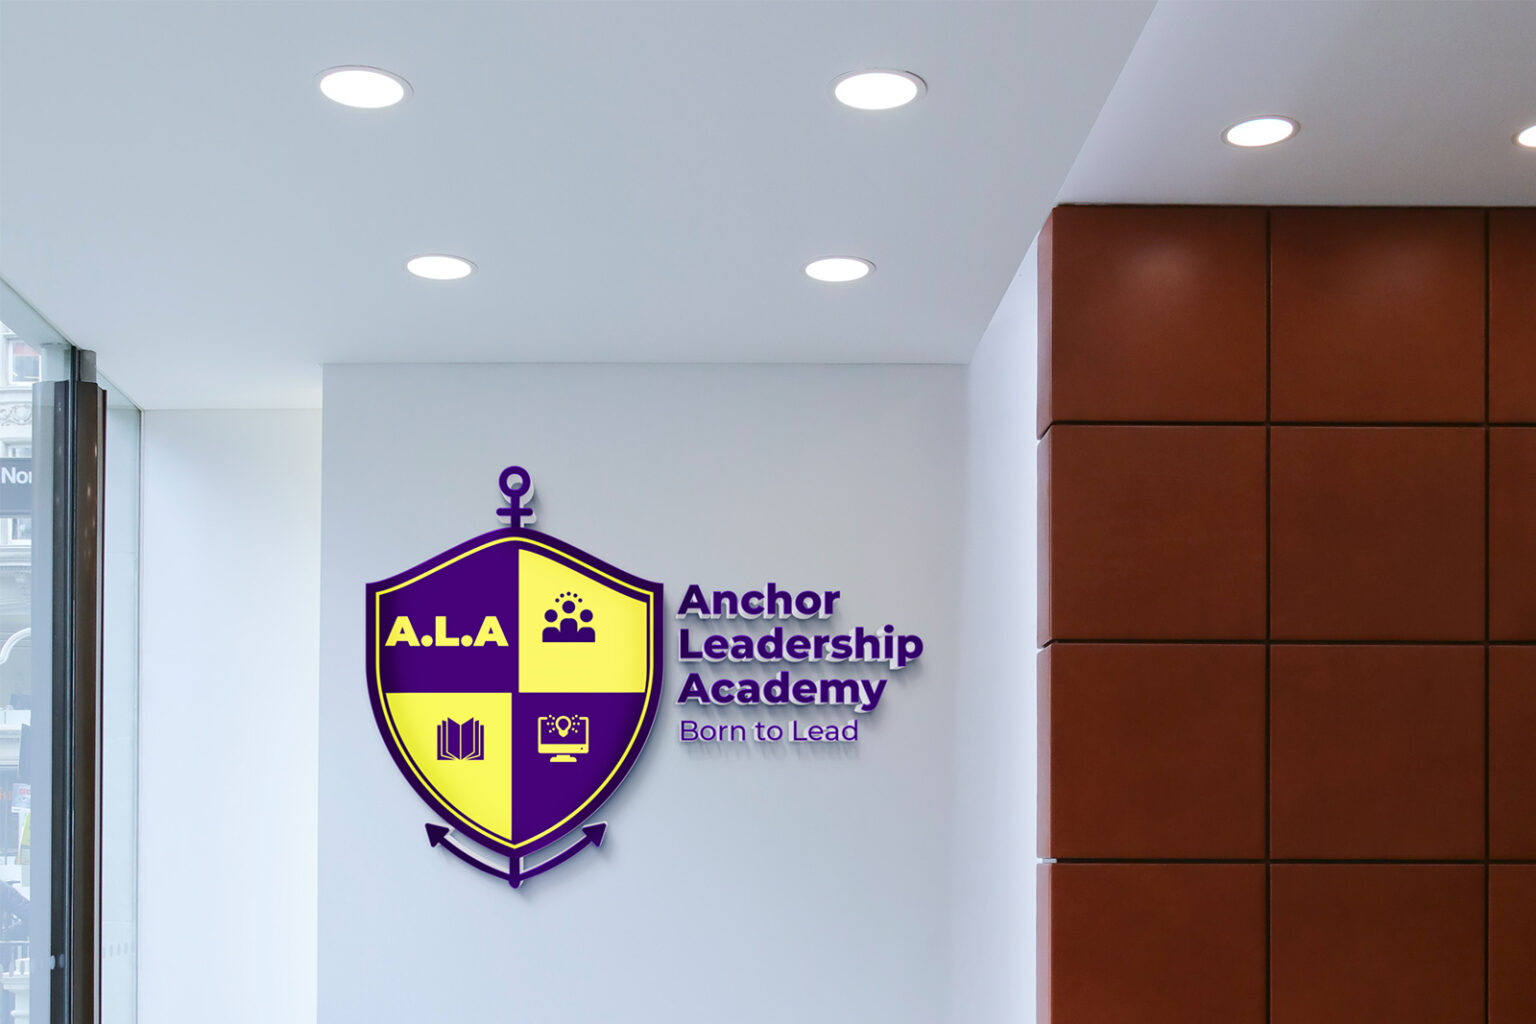 Anchor leadership academy